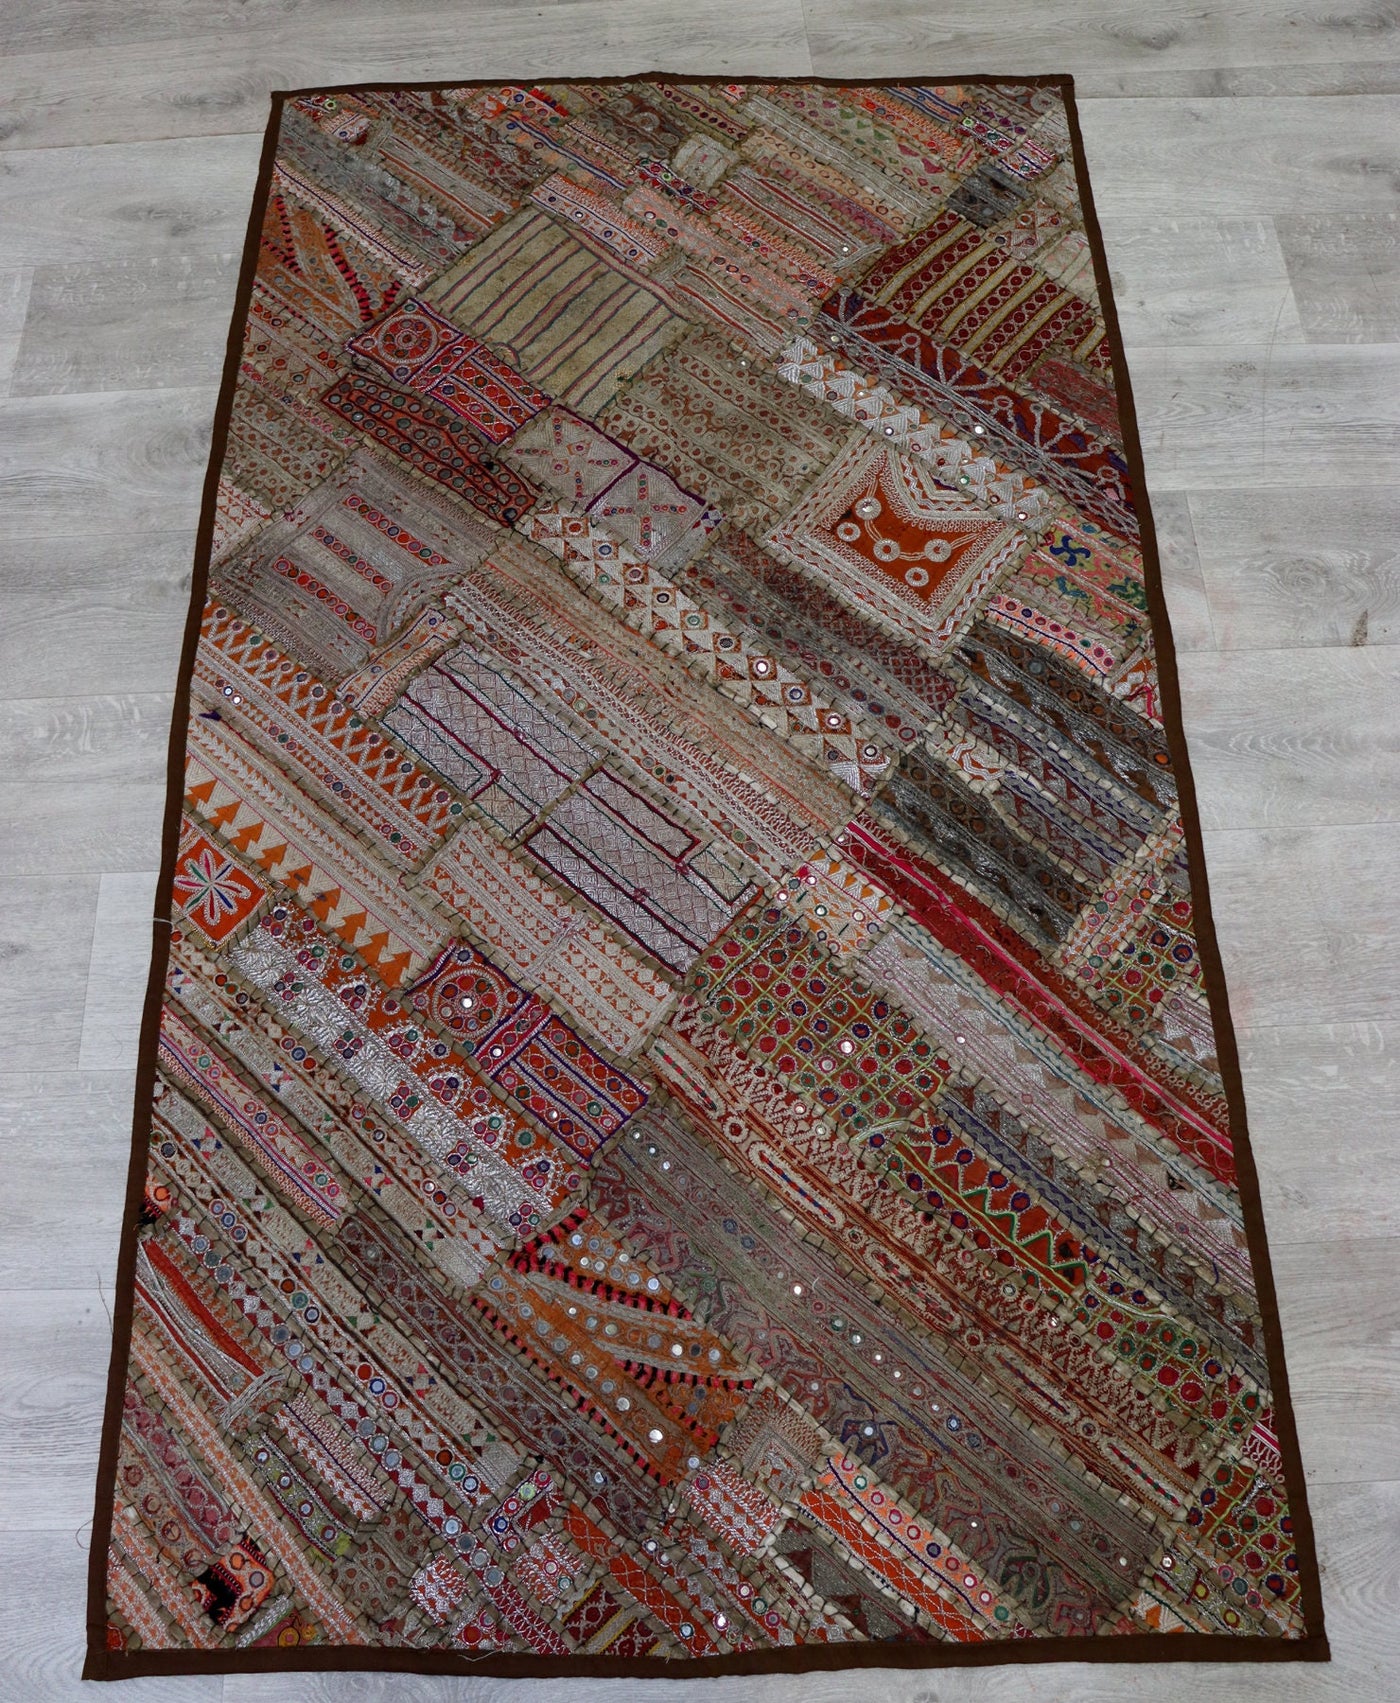 175x98 cm Vintage Bohemian orientalische Patchwork Wandbehang Wandteppich Teppich  Nr:22/26 Wandbehang Orientsbazar   